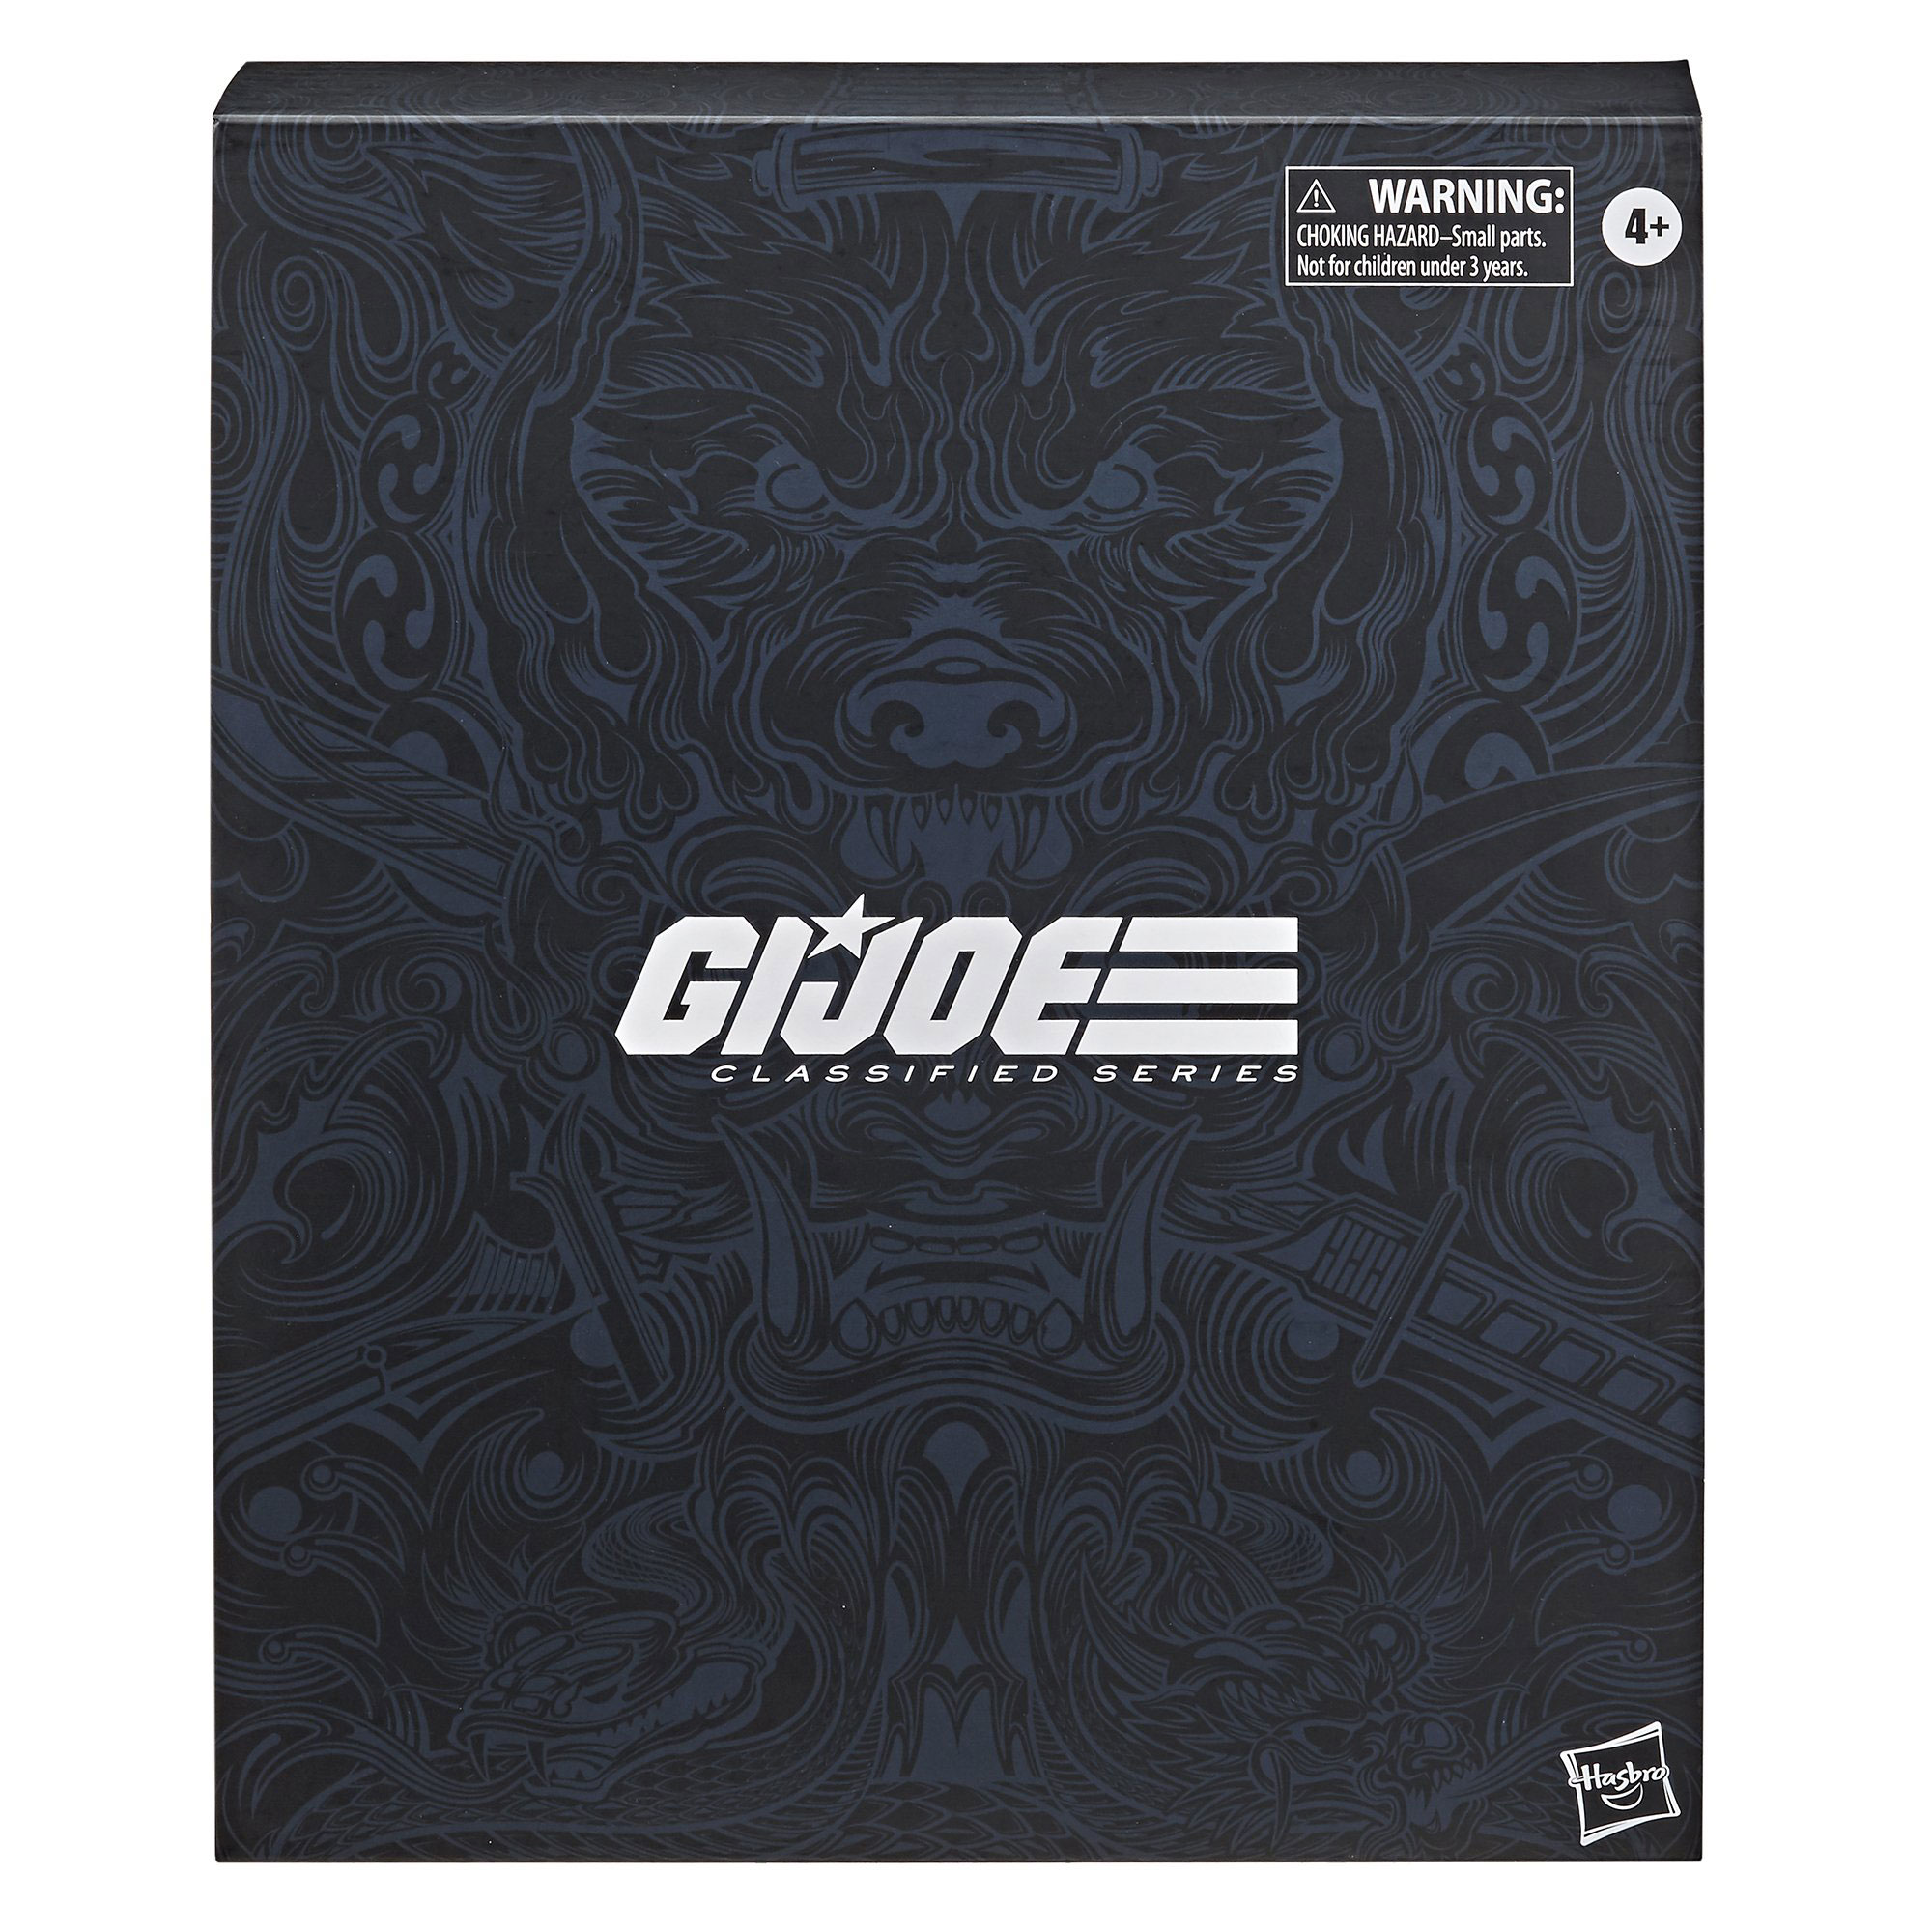 gi-joe-classified-snake-eyes-deluxe-figure-in-box-packaging